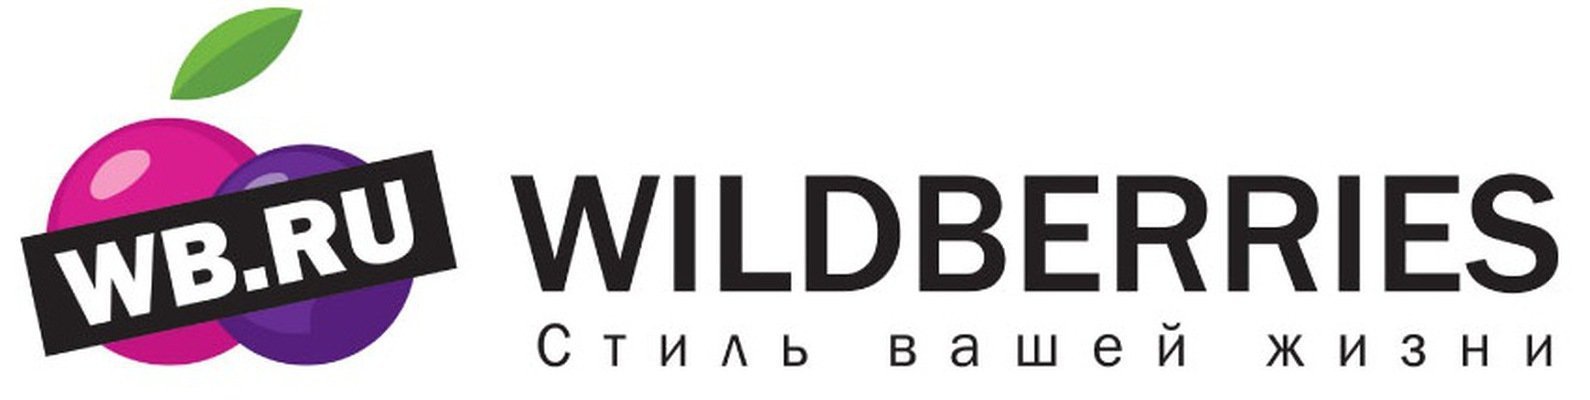 Вайлдберриз кз казахстан. Wildberries лого. WB логотип вайлдберриз. Надпись Wildberries. Логотип ва.